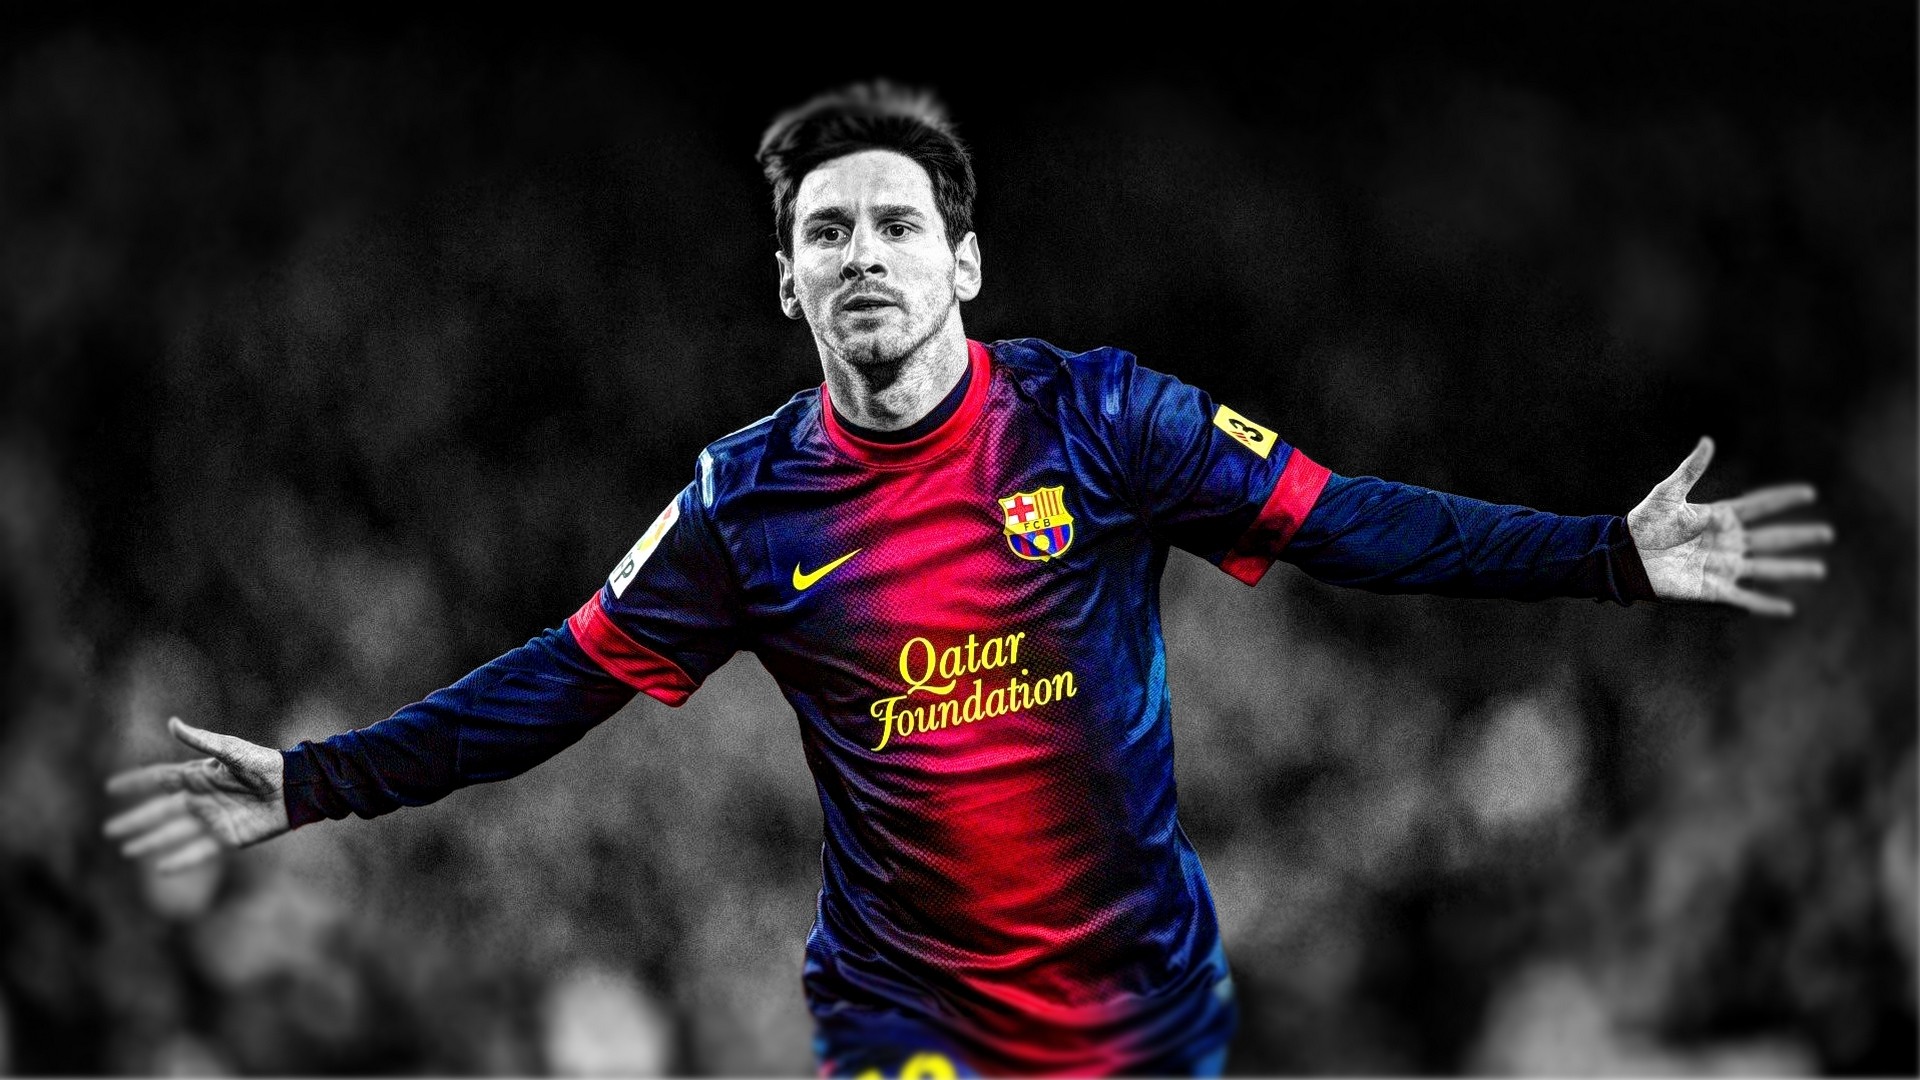 Lionel Messi là một trong những cầu thủ xuất sắc nhất của thế giới và khả năng phô diễn kỹ năng cùng những bài ăn mừng đầy sáng tạo của anh là điều không thể bỏ qua. Hãy cùng xem những khoảnh khắc đầy cảm xúc của Lionel Messi trong các trận đấu.